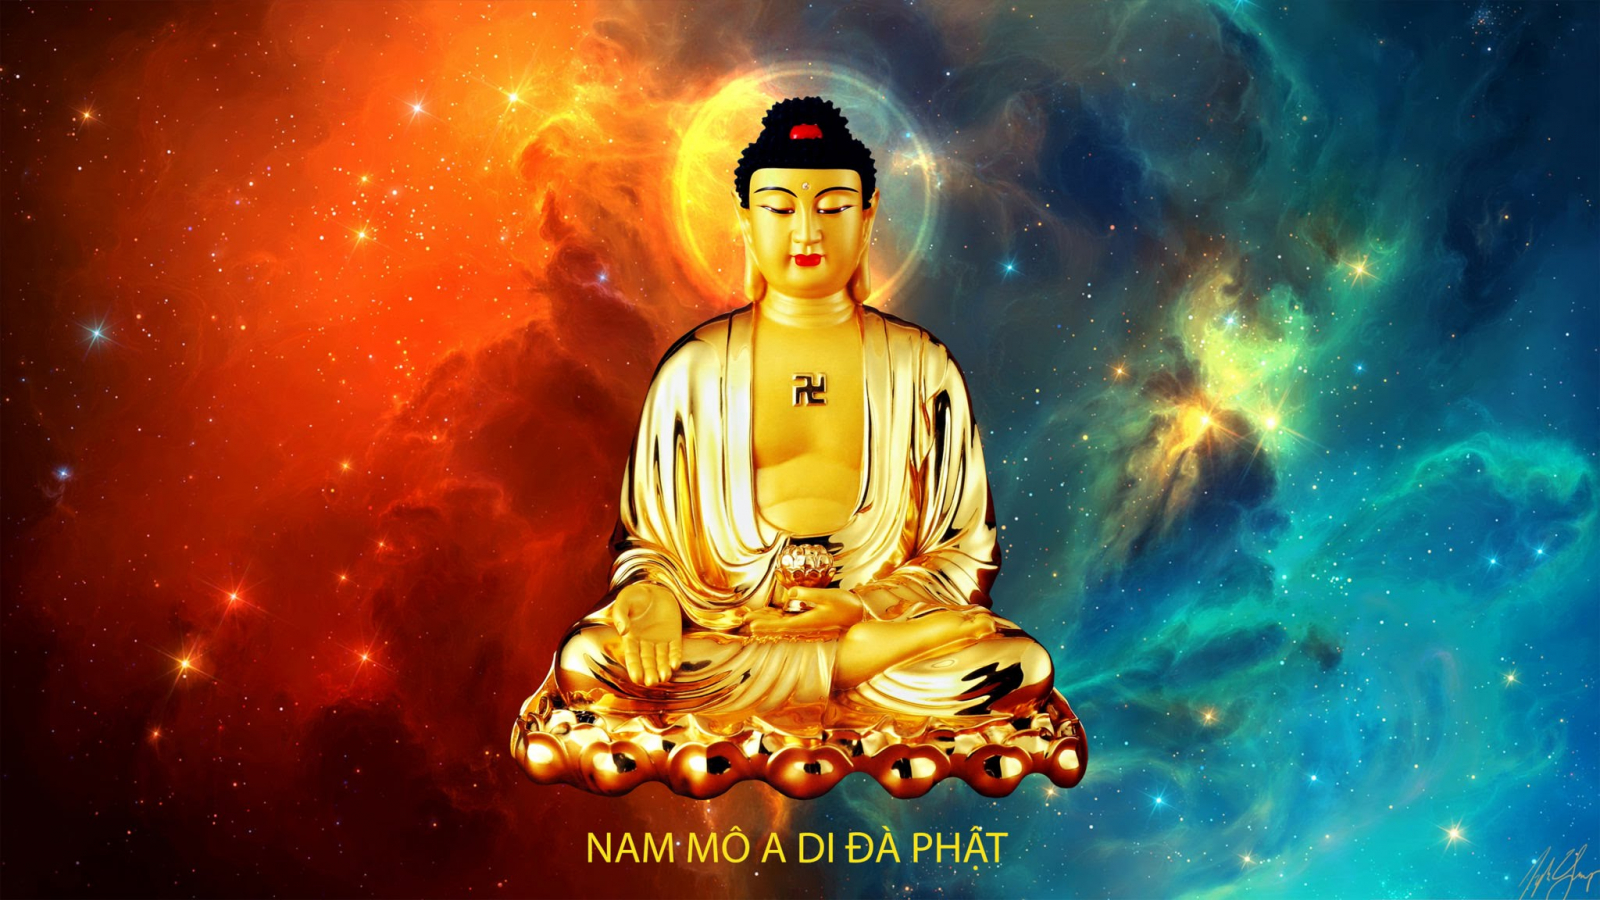 Trì chú và niệm Phật - Những hình ảnh về trì chú và niệm Phật sẽ đưa ta đến một cuộc hành trình tuyệt vời đến với bình an tâm hồn. Cùng tìm hiểu những bài học nhân ái và tìm thấy sự yên bình trong chính mình.